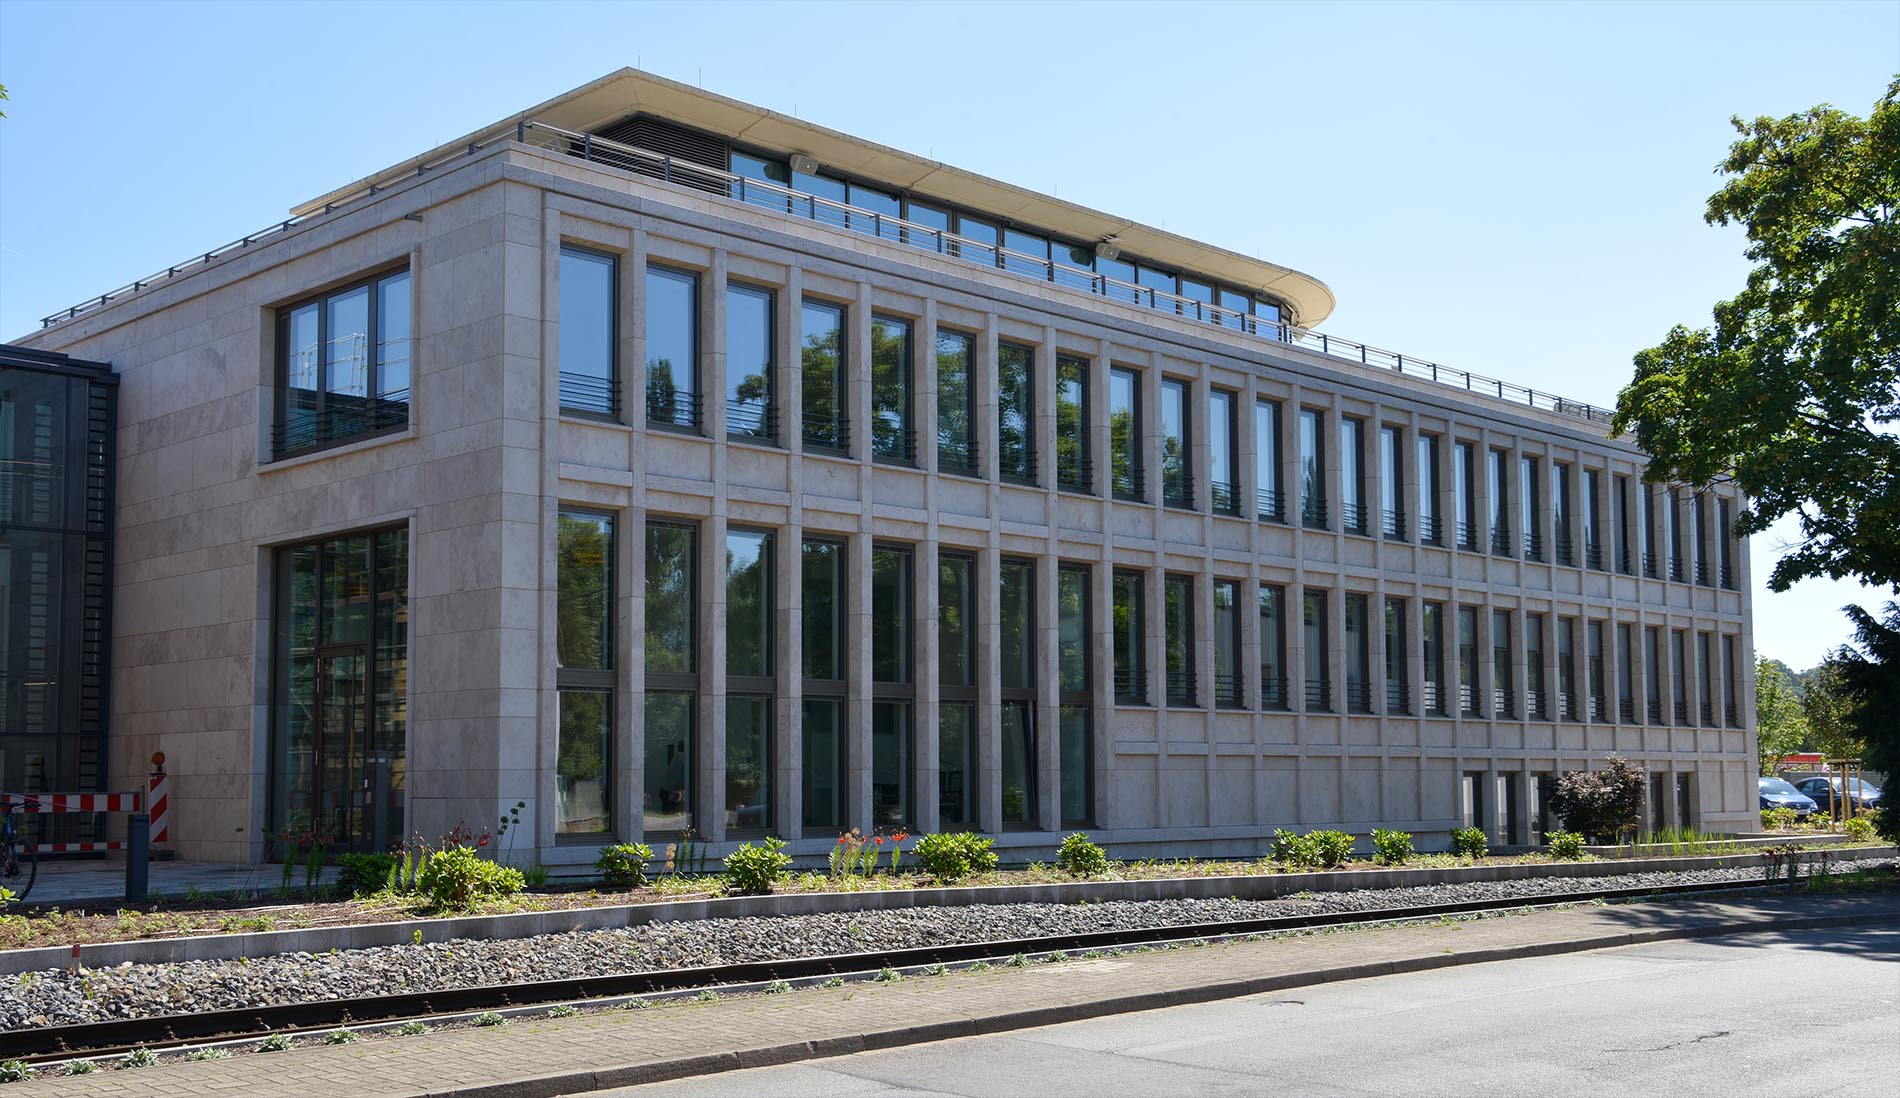 Fassade aus Bauhaus Travertin - Q1 AG Osnabrück 